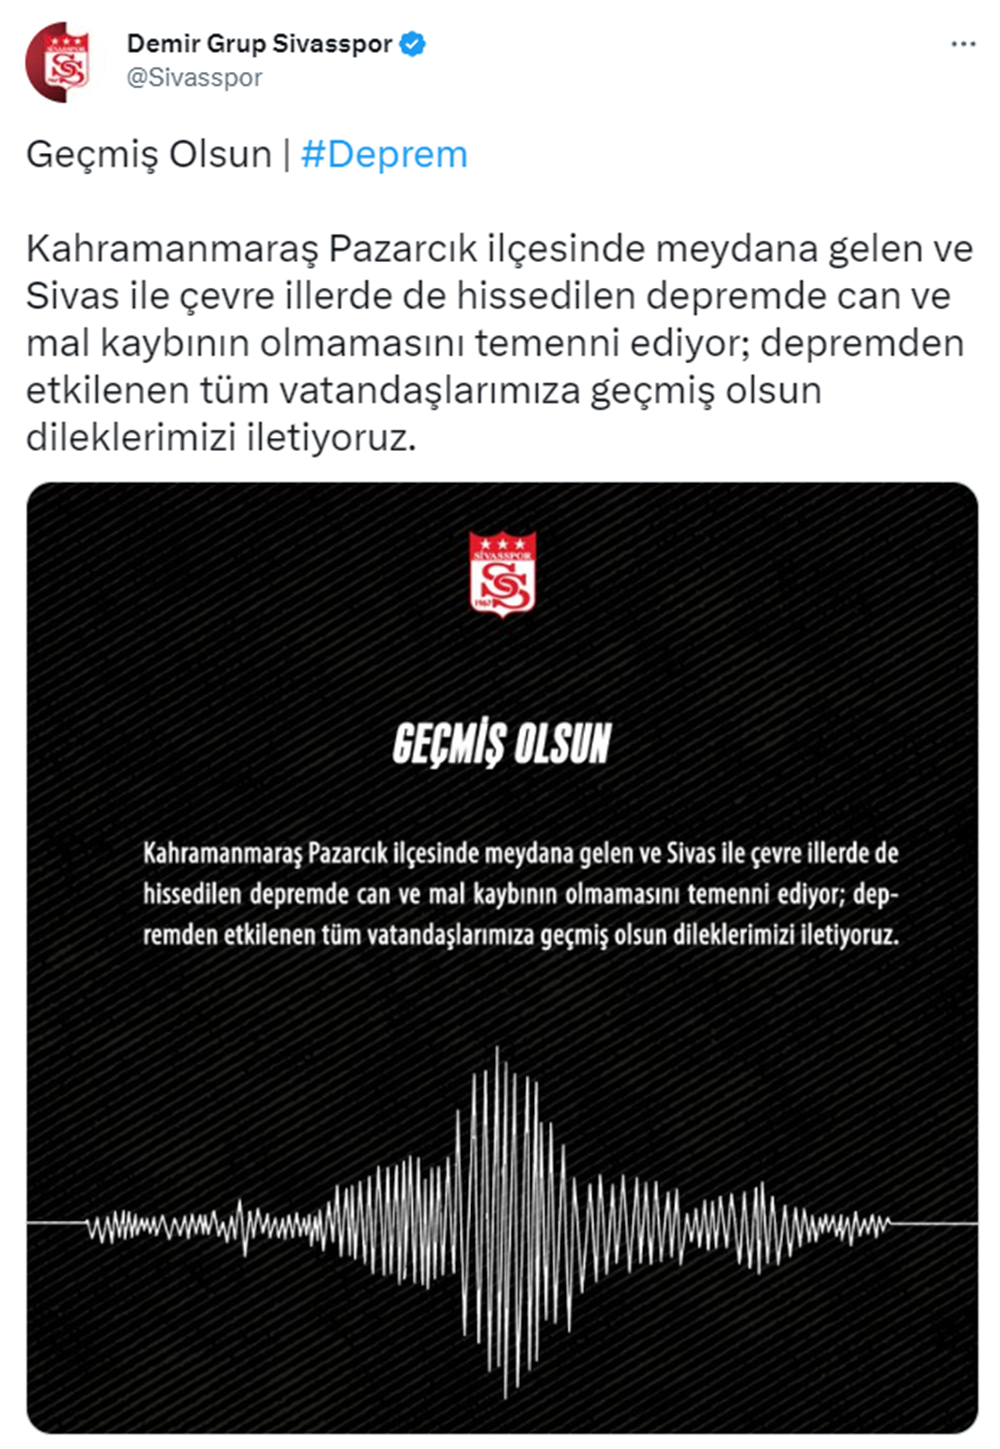 TFF ve Süper Lig kulüplerinden geçmiş olsun mesajı  - 11. Foto